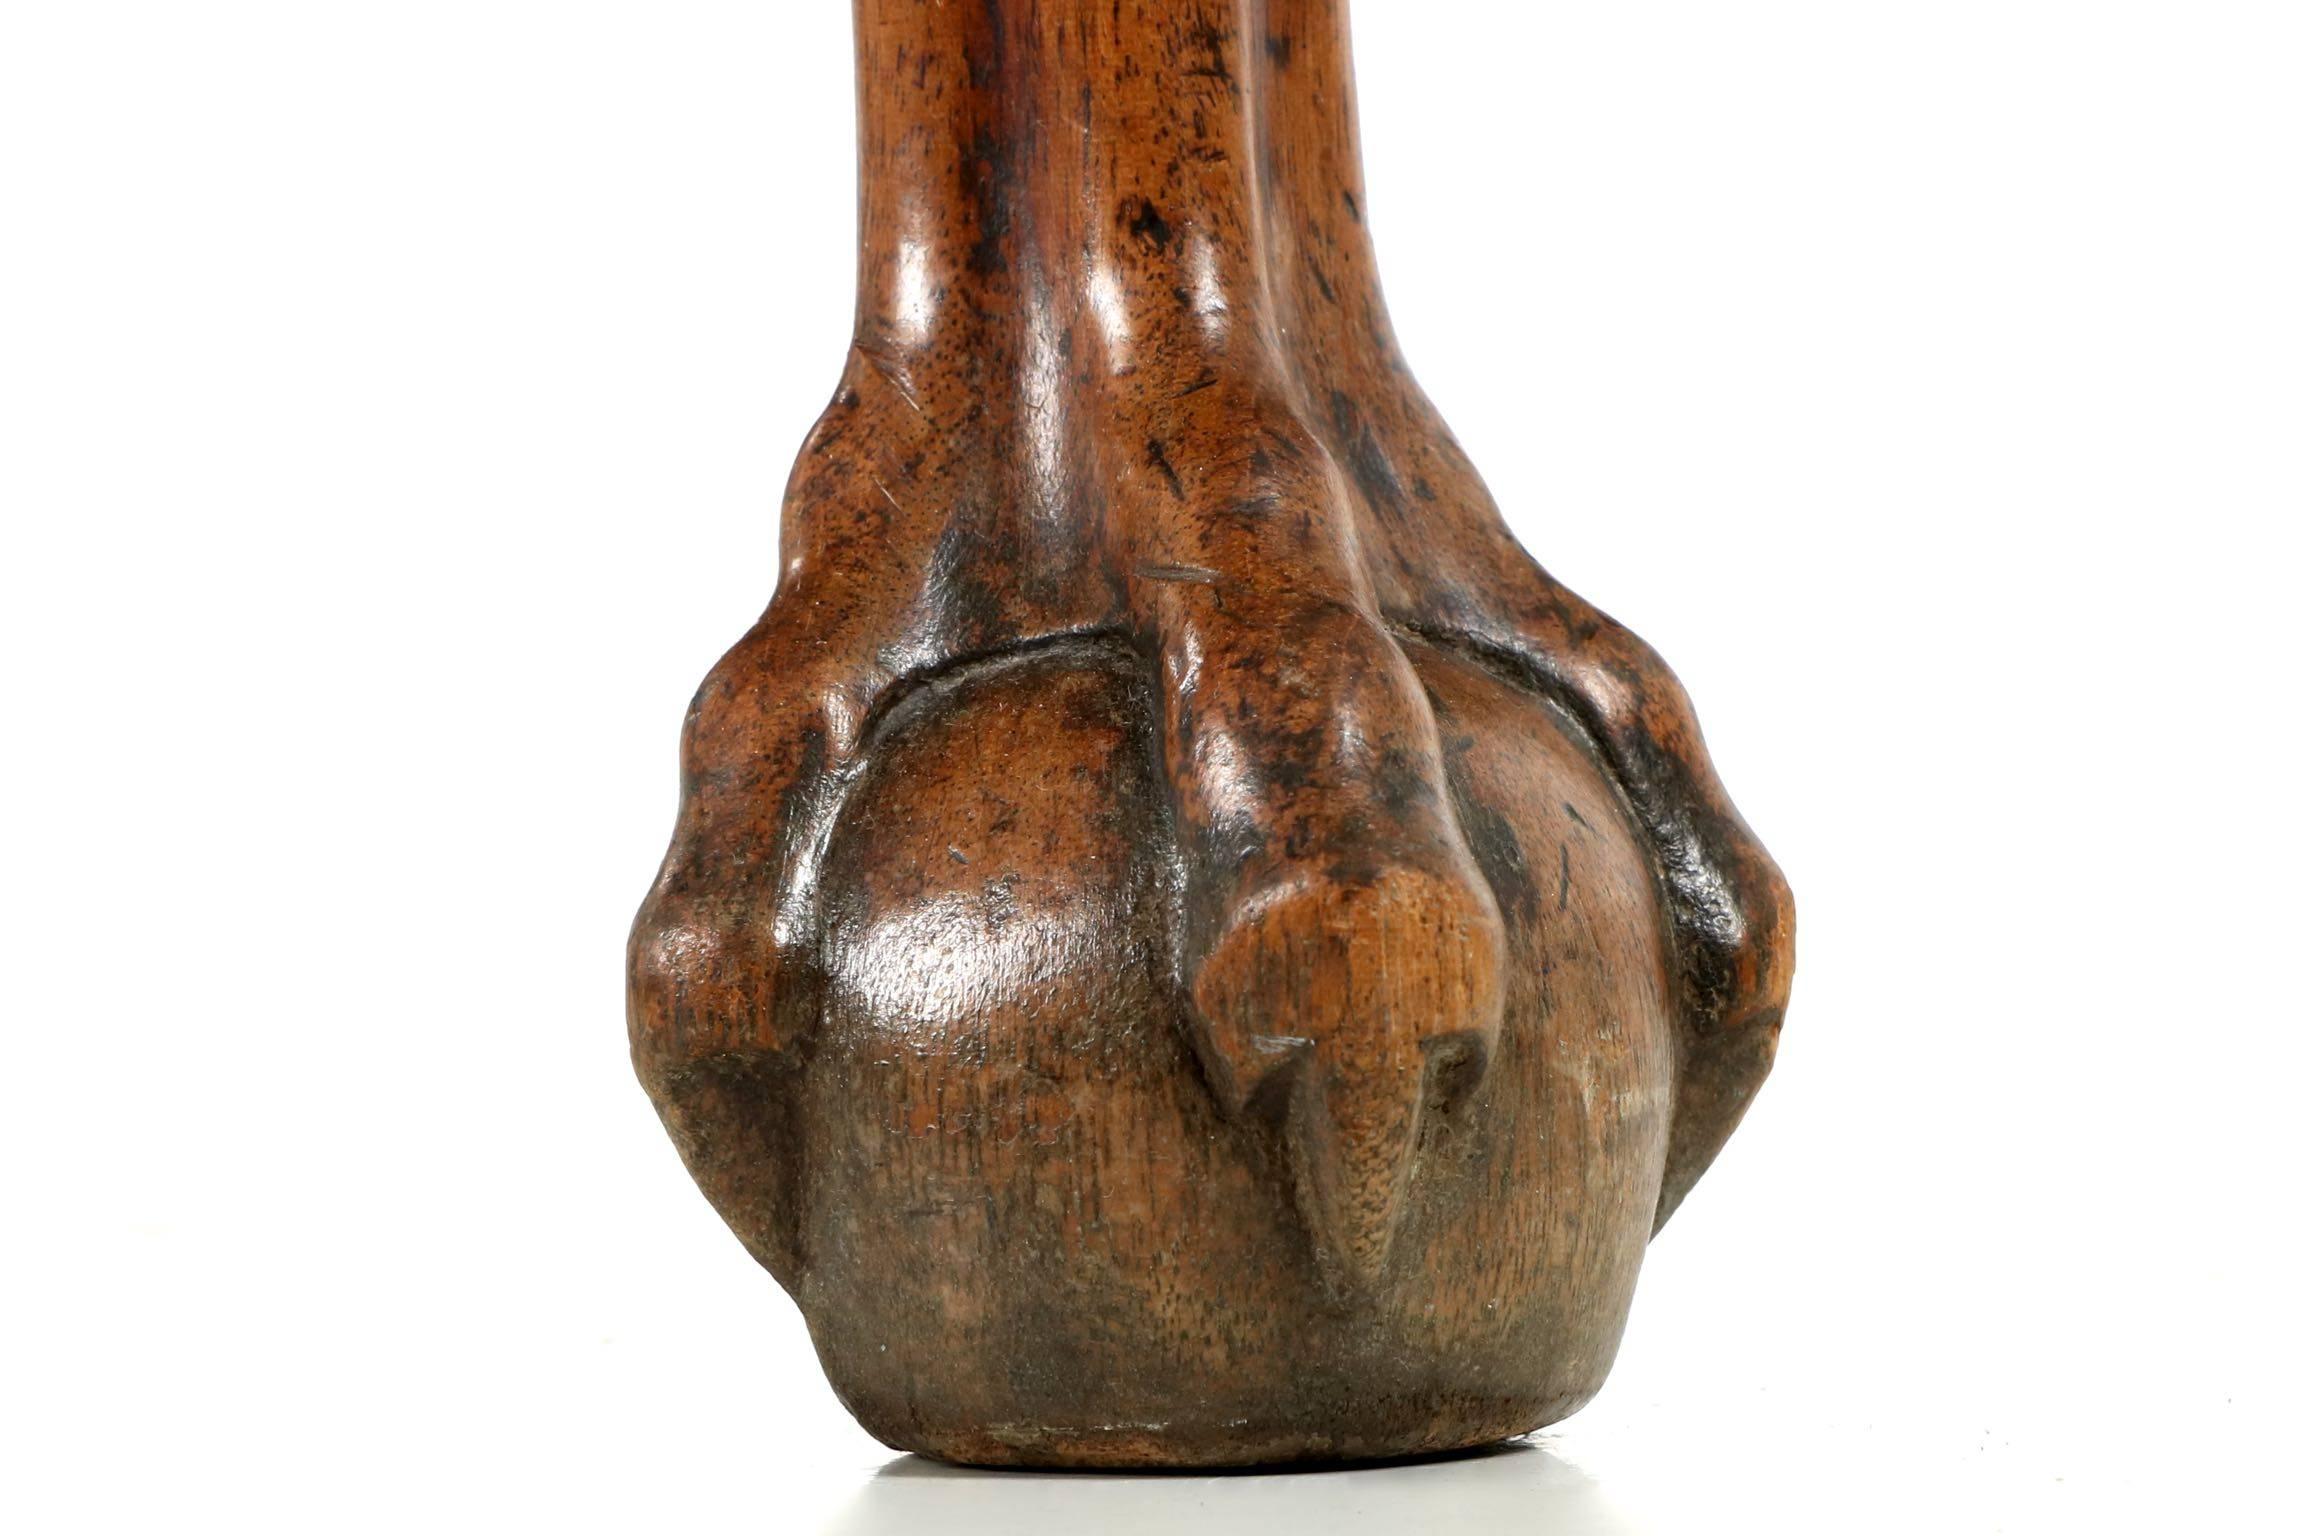 Pine 18th Century English George II Walnut Drop-Leaf Table with Ball & Claw Feet